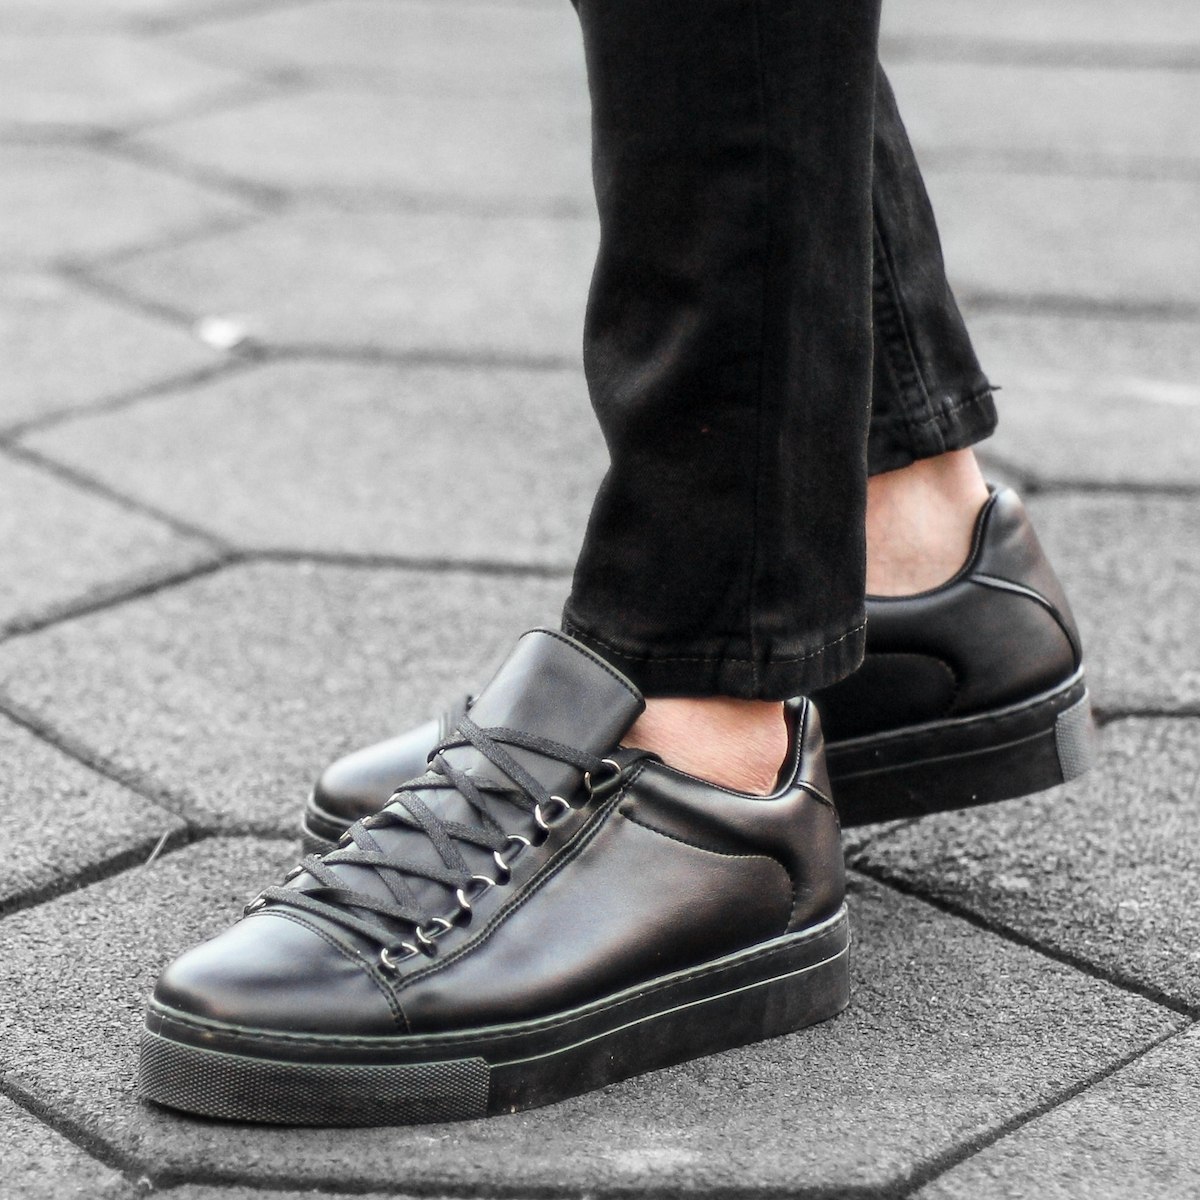 Men’s Low Top Outdoor Sneakers Shoes Black | Martin Valen